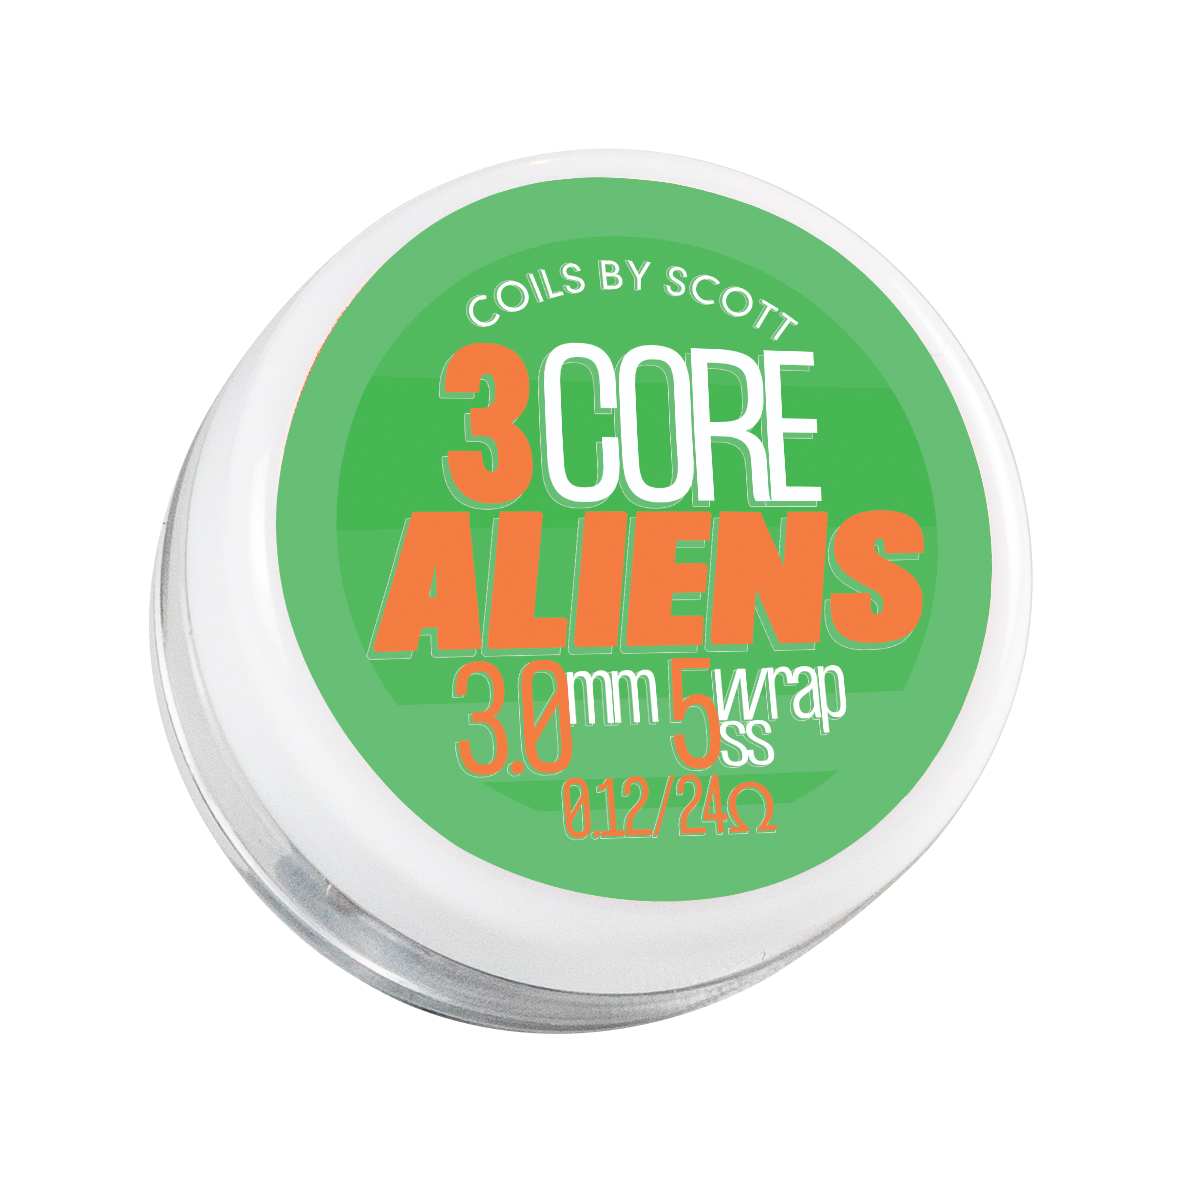 0.12 SS 3 Core Alien